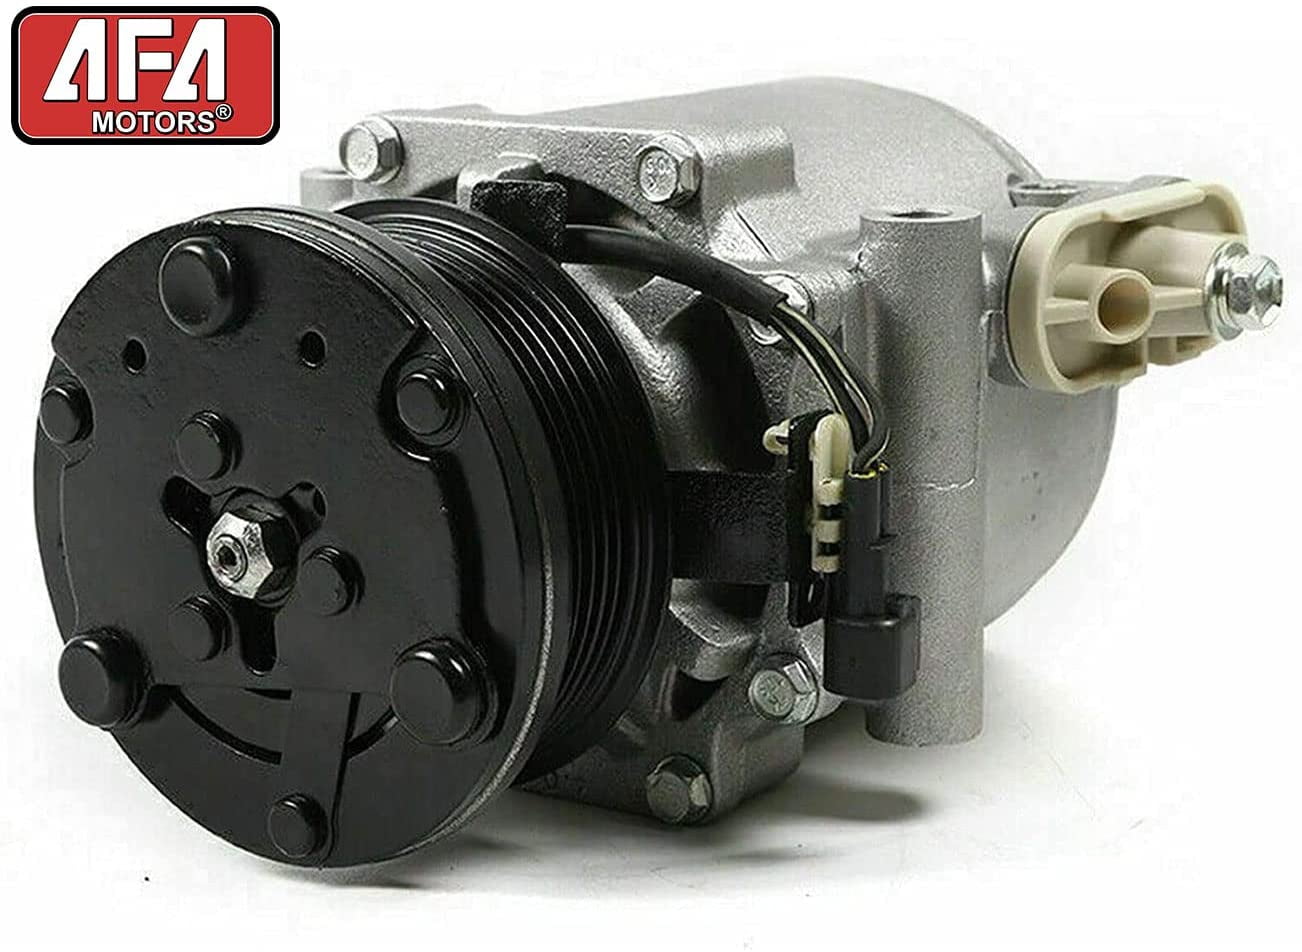 Black Valve Spring Compressor Tool Für Ford 4.6L 5.4L 6.8L 3V Engines T4 